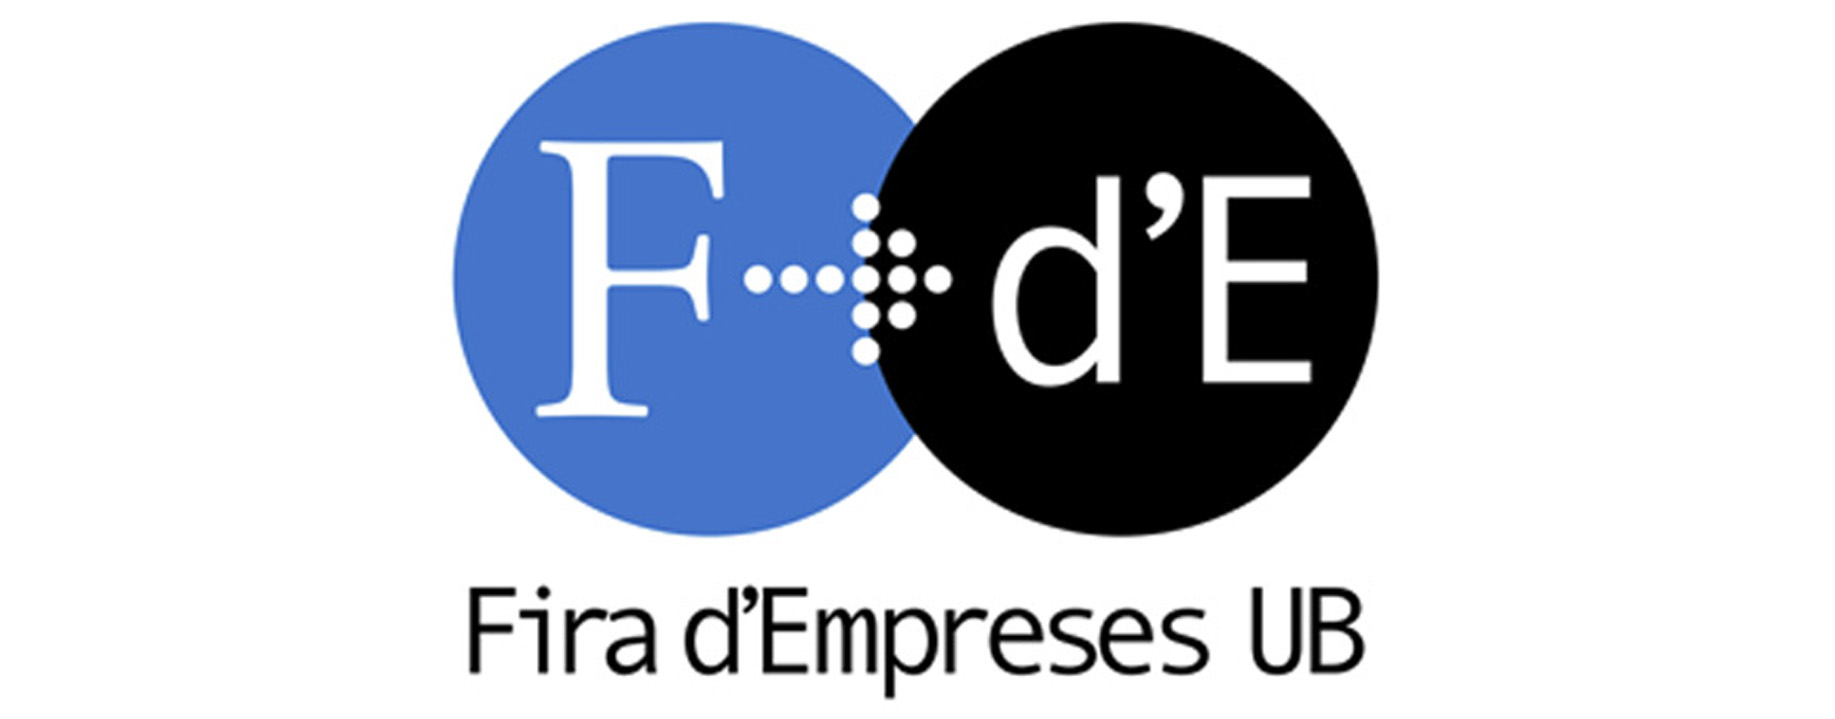 Logo Feria